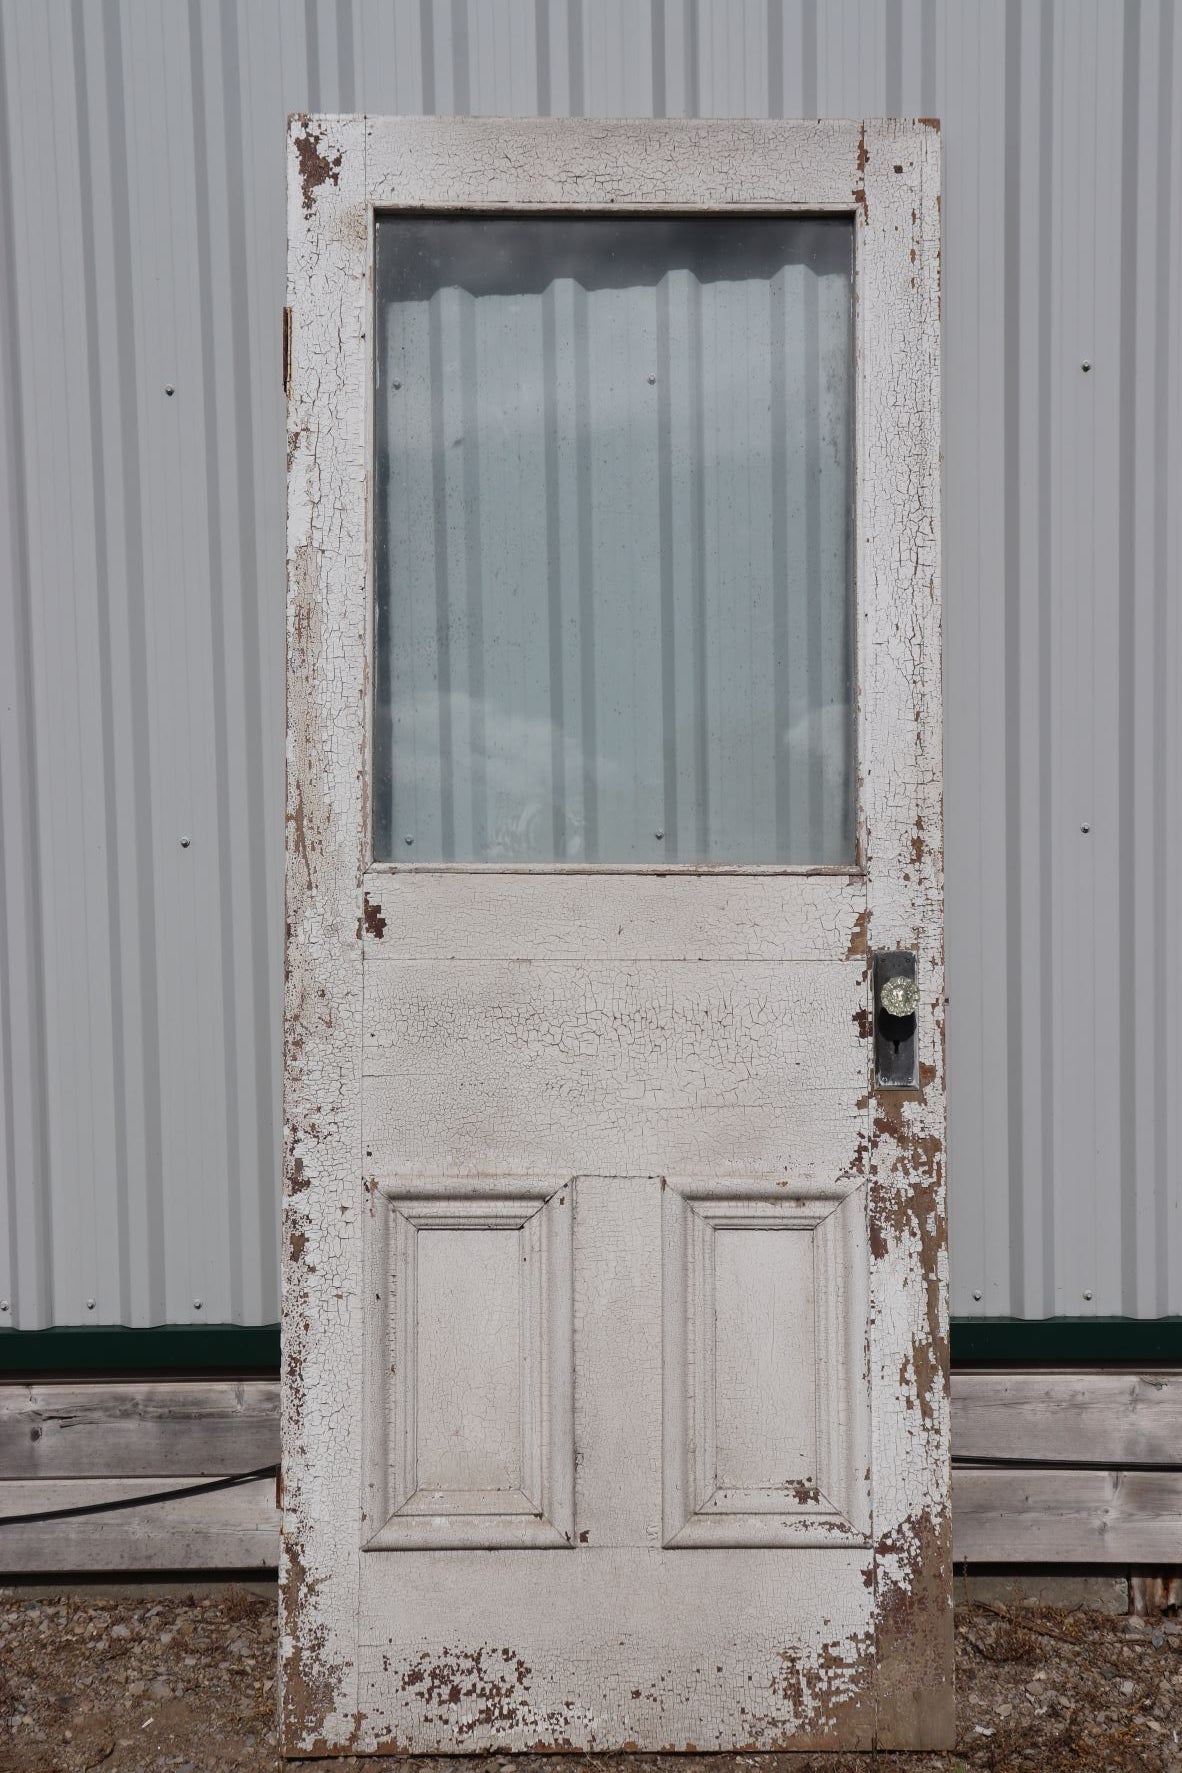 Old Wooden Exterior Door With Window